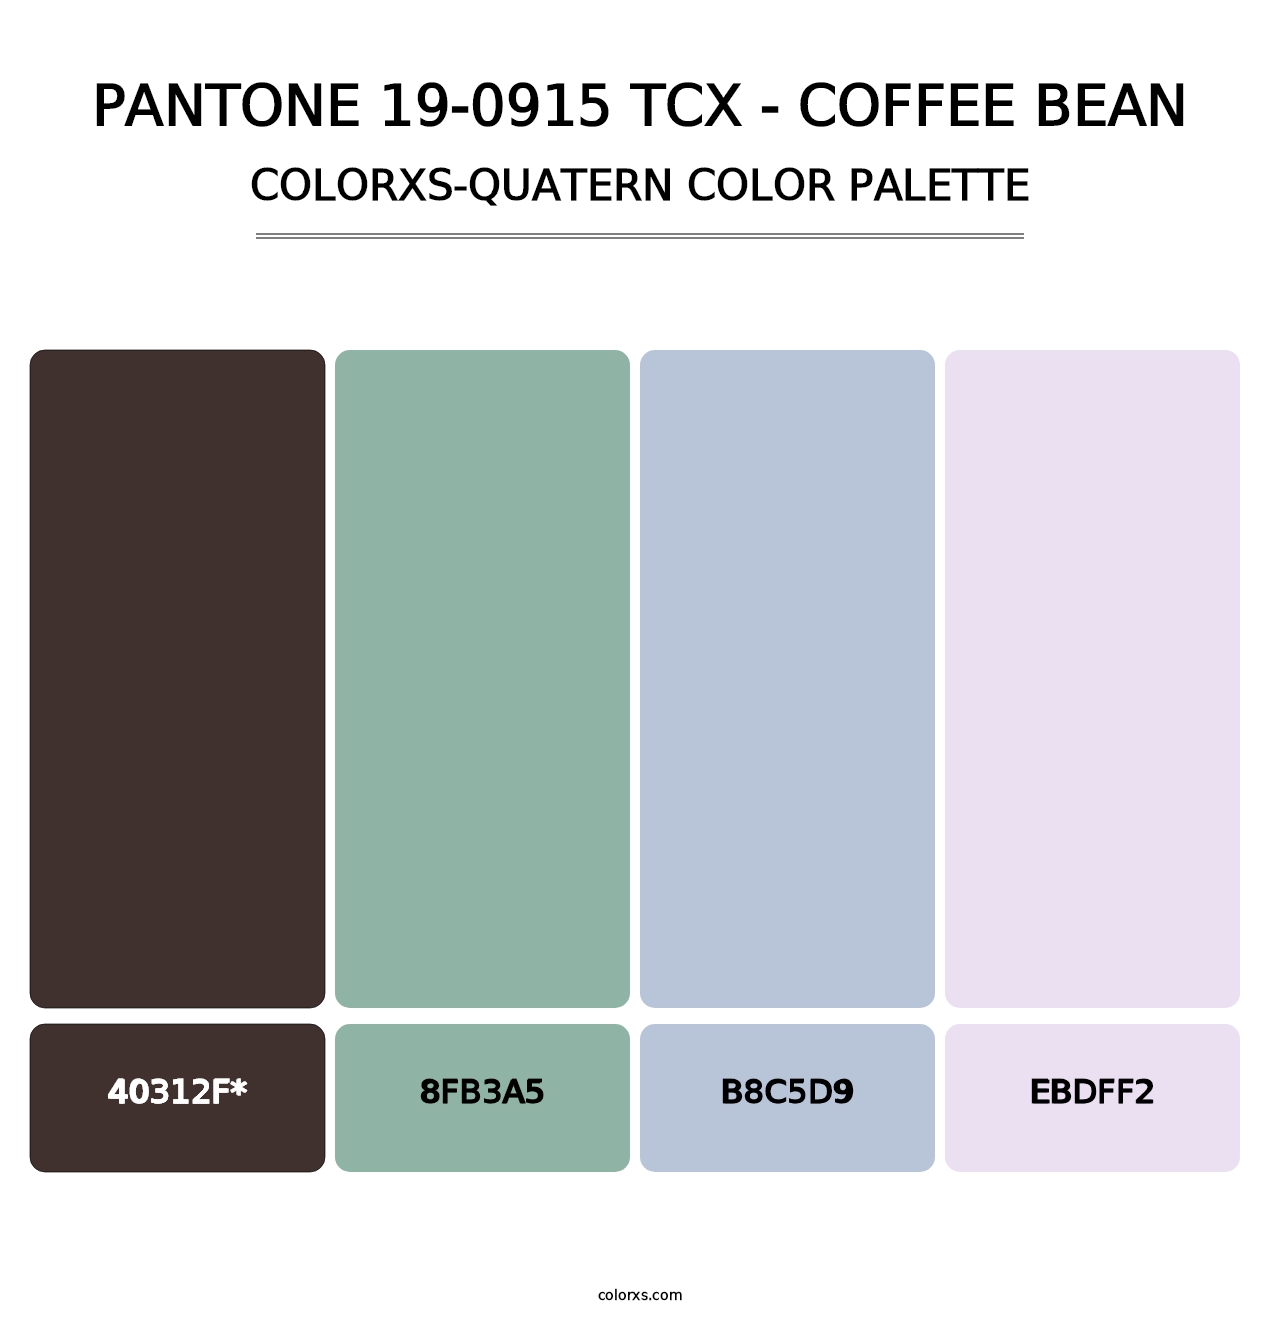 PANTONE 19-0915 TCX - Coffee Bean - Colorxs Quatern Palette